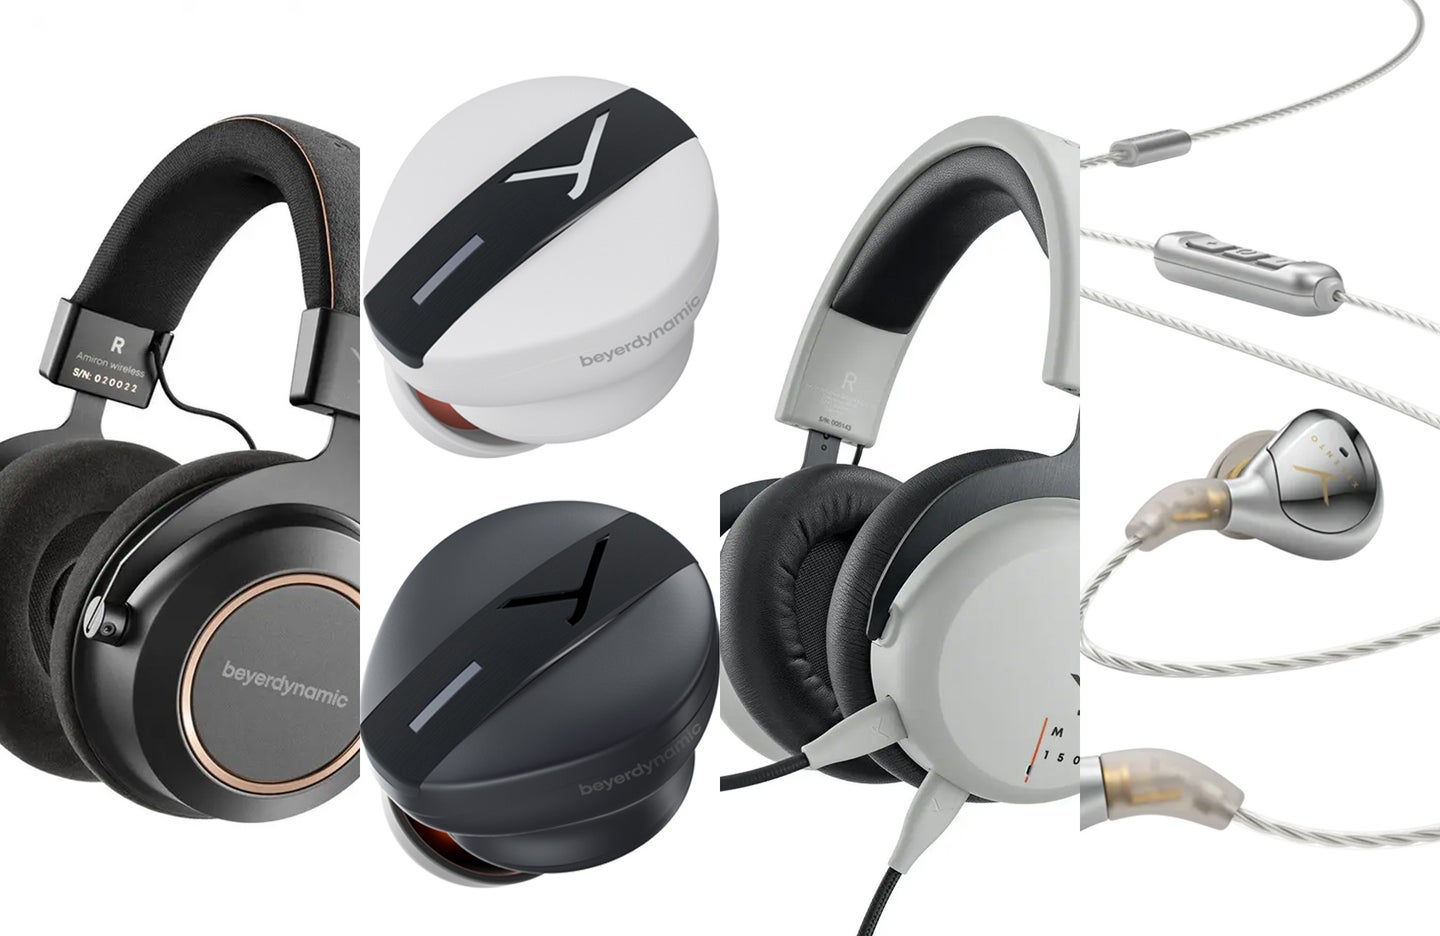 A lineup of beyerdynamic headphones on sale.